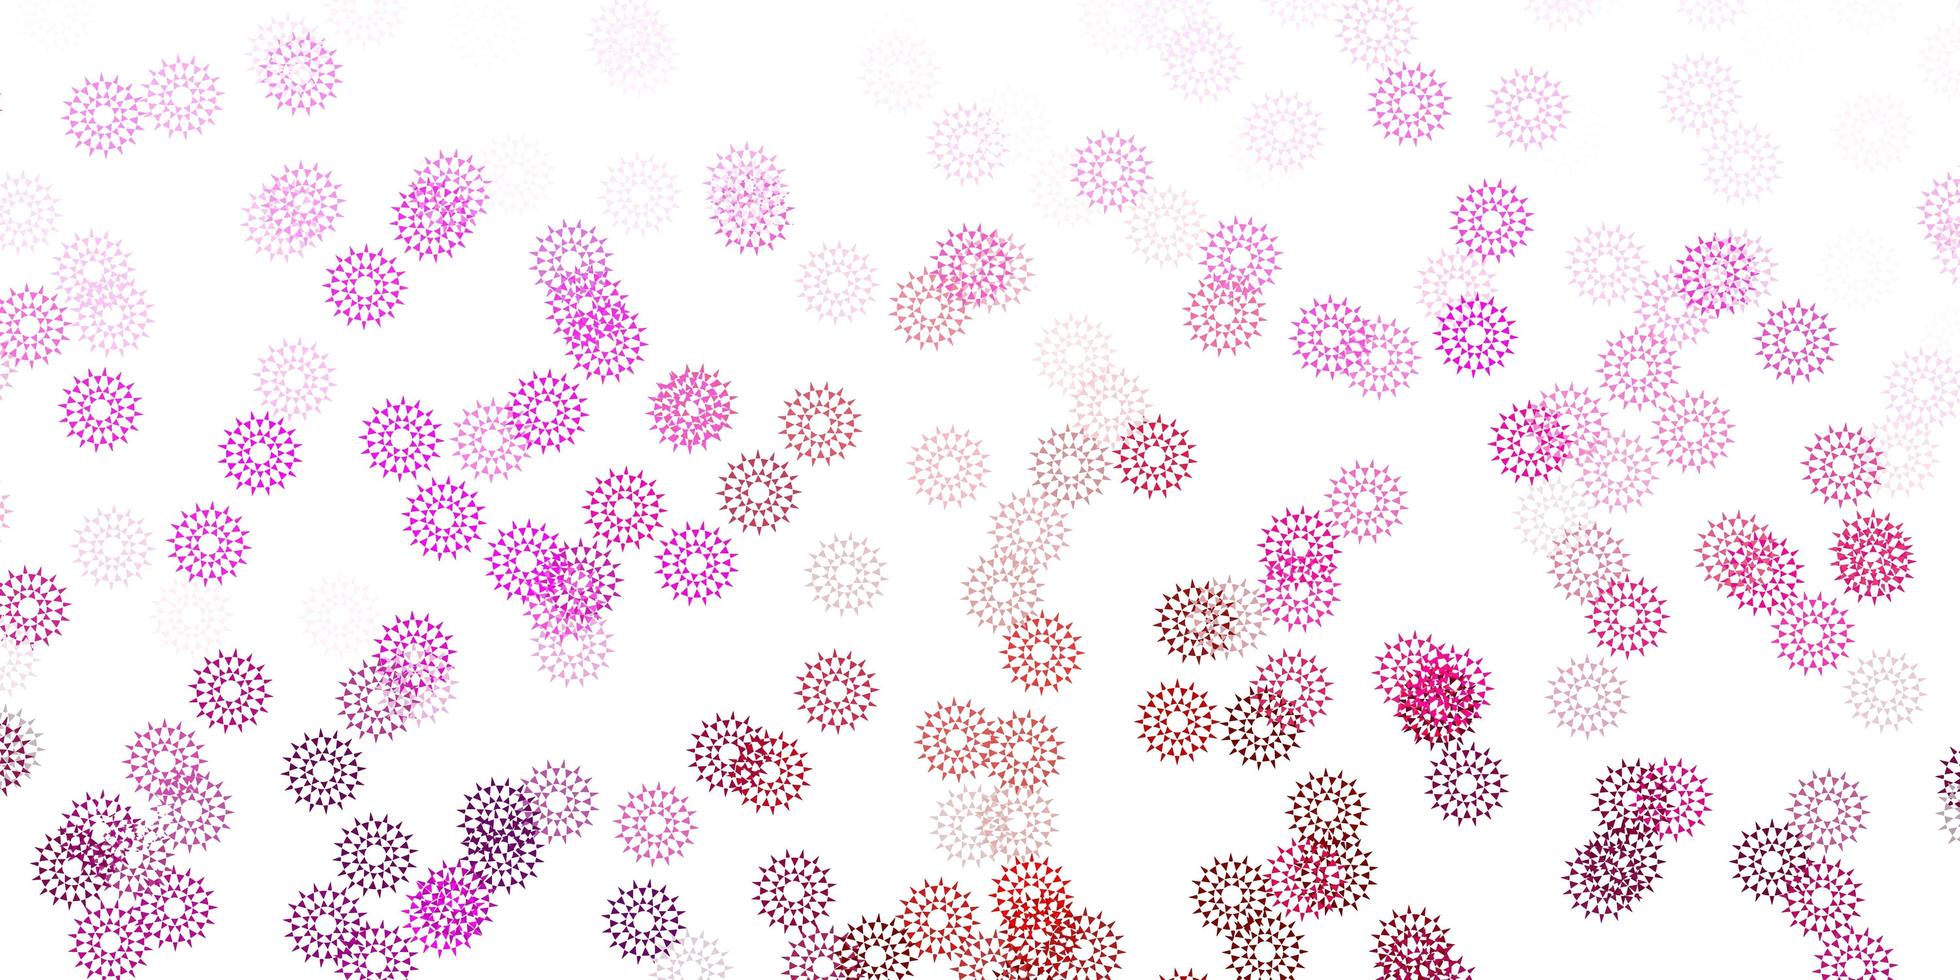 diseño natural de vector rosa claro con flores.